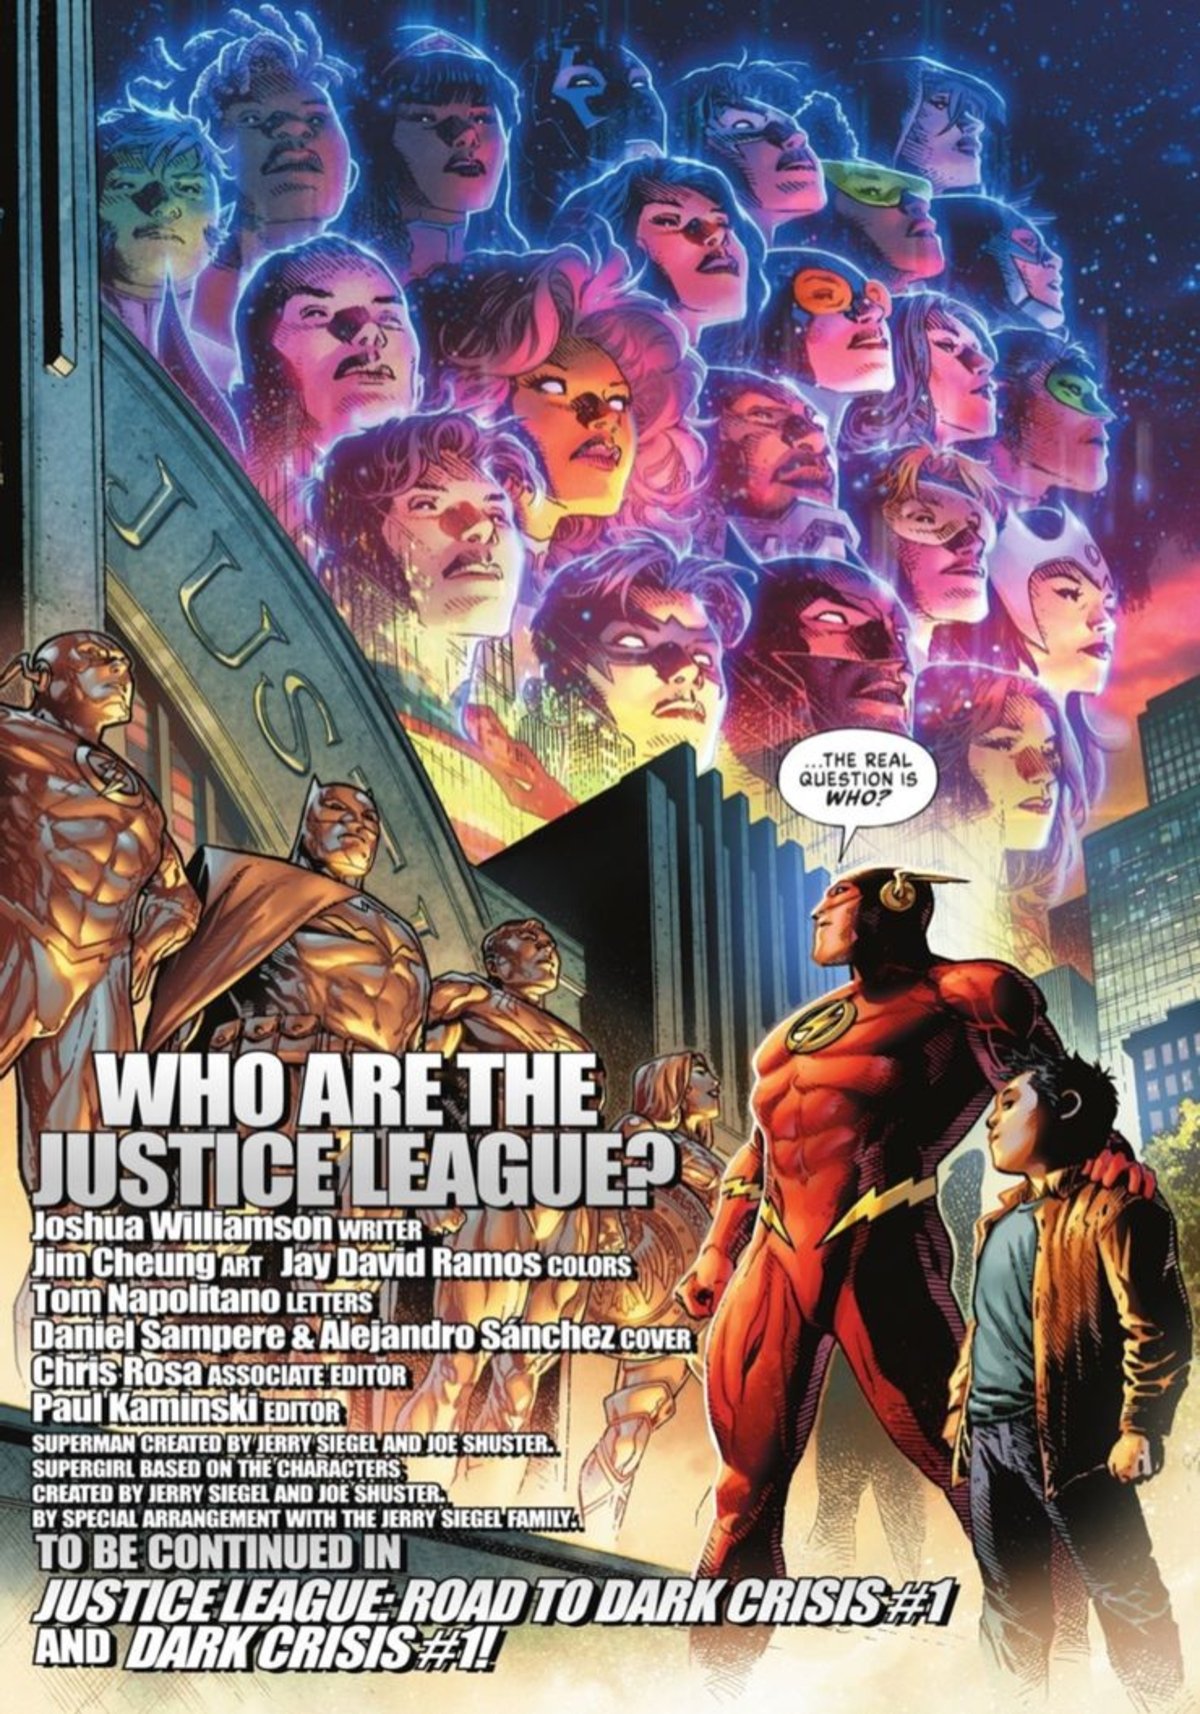 La Liga de la Justicia se reinventa tras la muerte de sus miembros principales